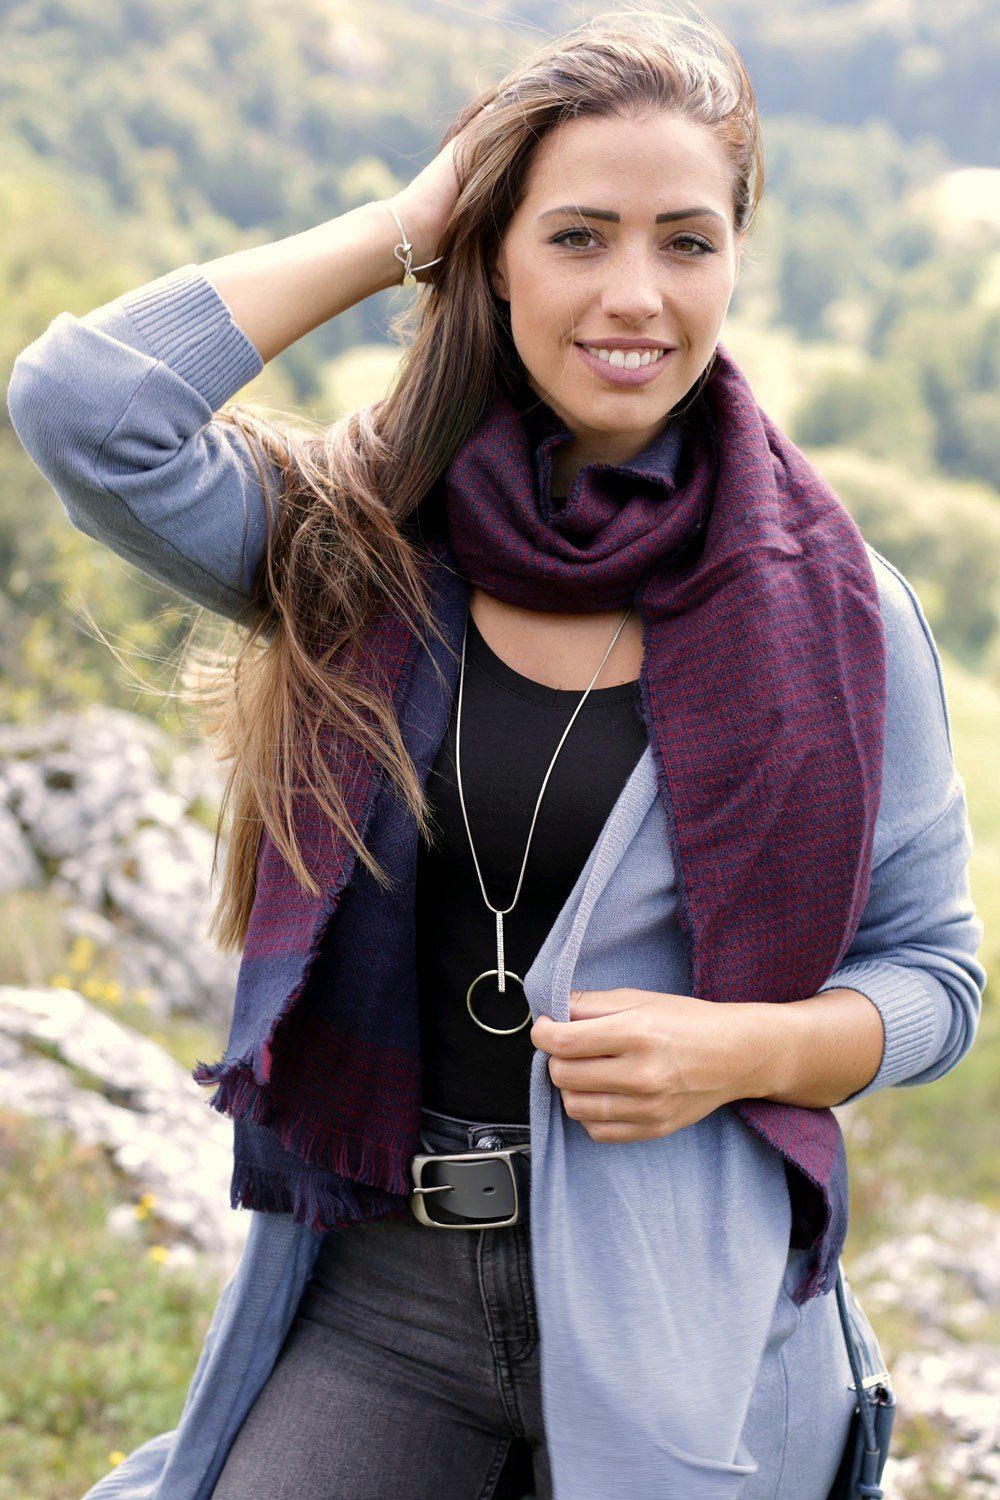 (1-St), Muster 2-farbigem Schal mit Grau-Schwarz Modeschal, styleBREAKER Hahnentritt